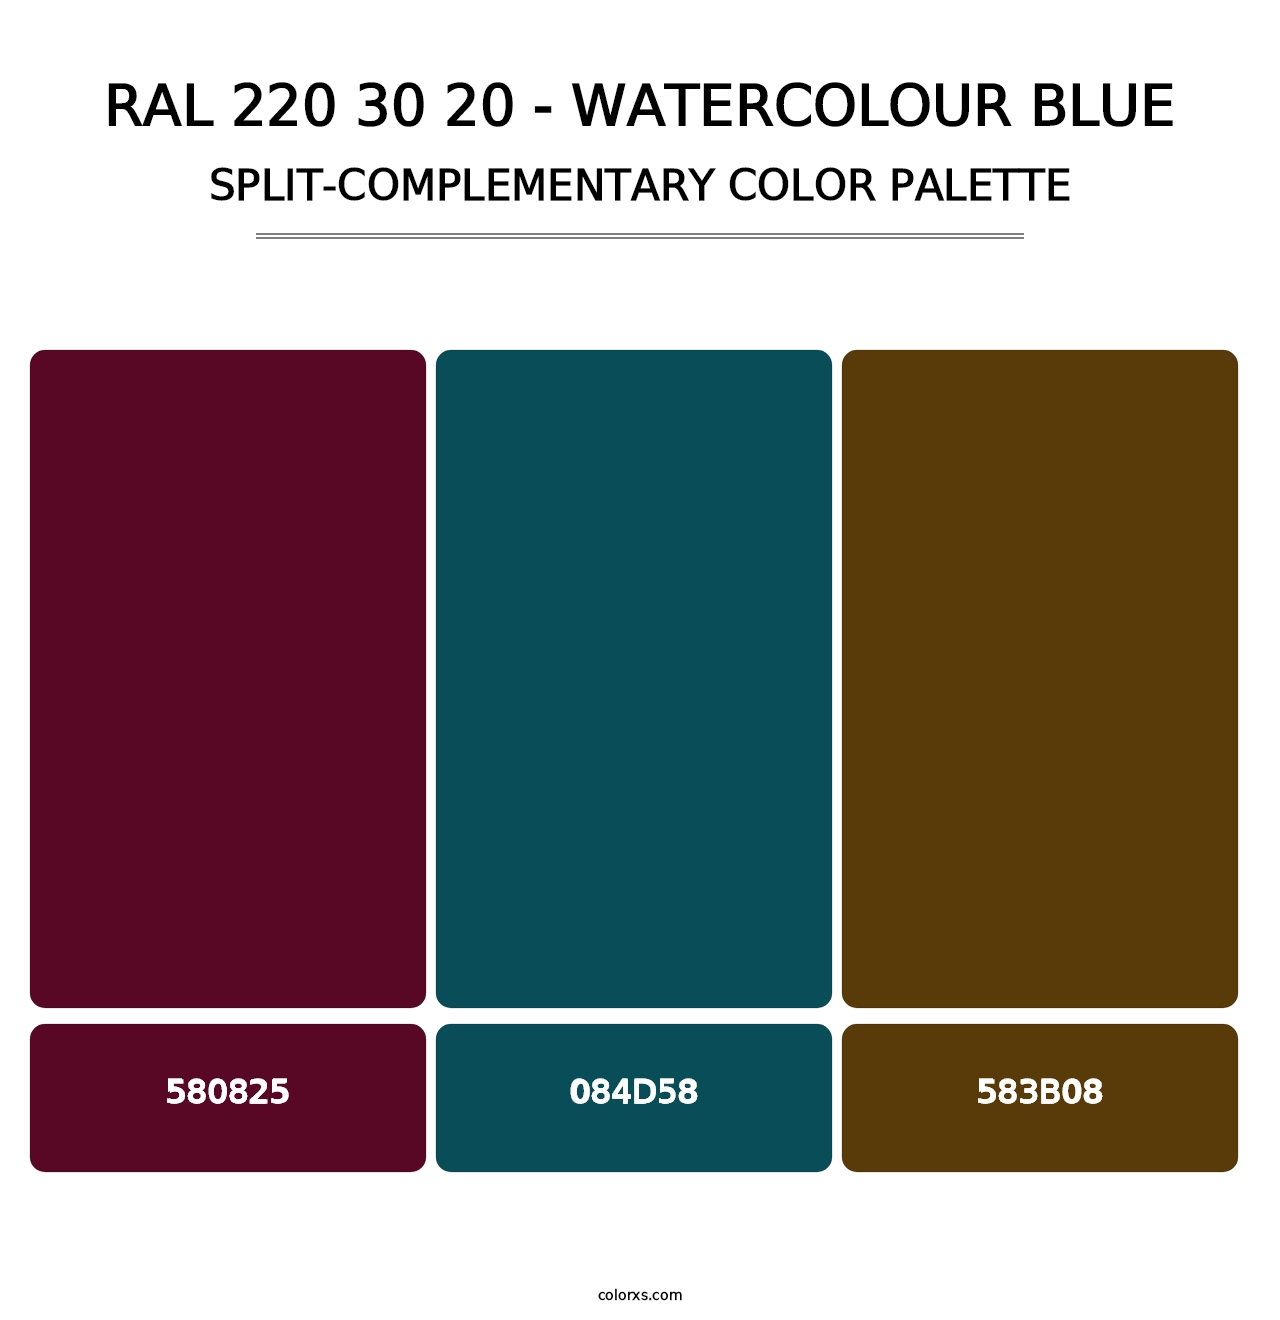 RAL 220 30 20 - Watercolour Blue - Split-Complementary Color Palette